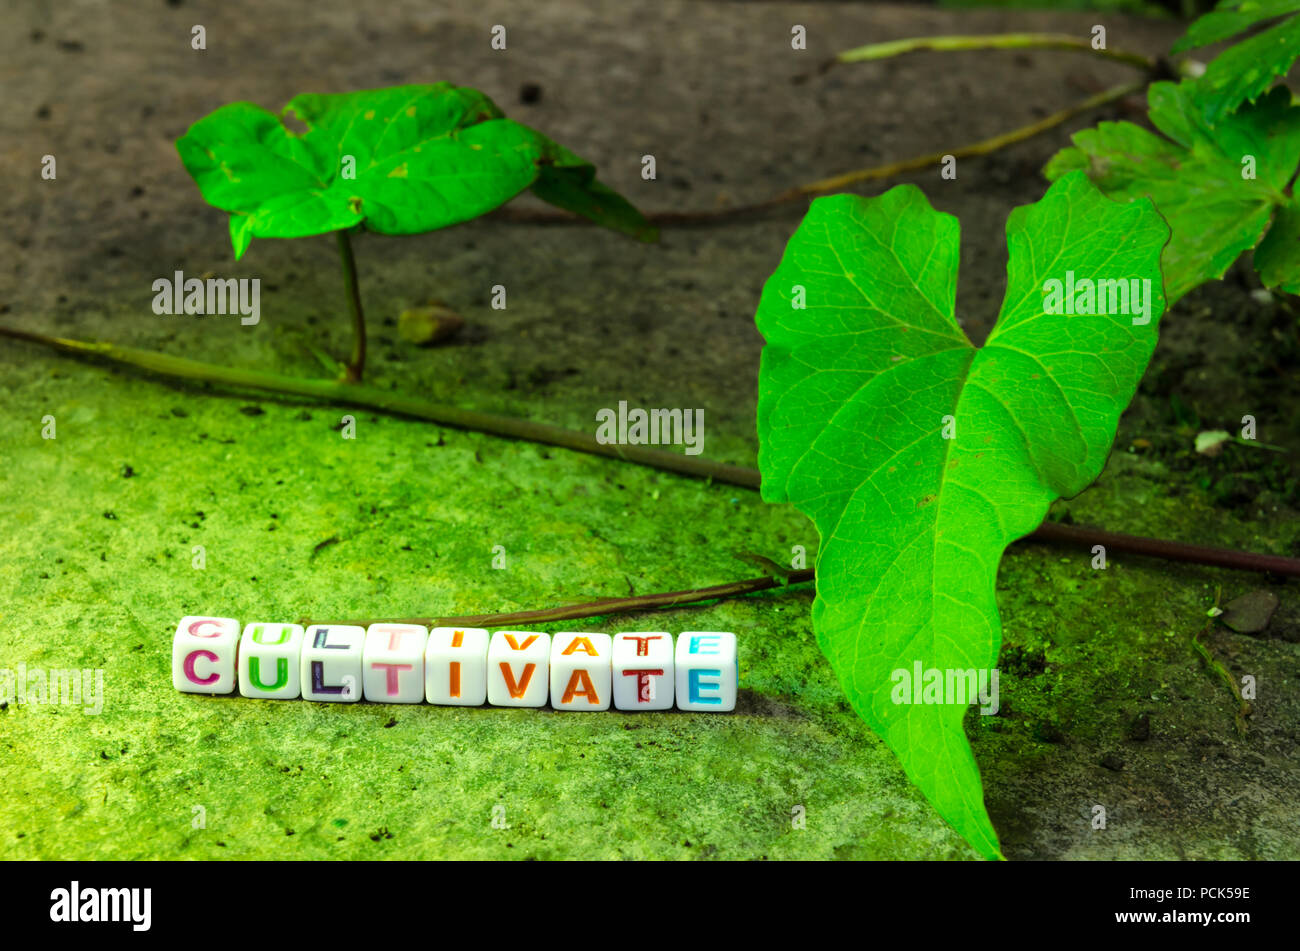 Cordones alfabético suspendida en un cable corrector 'cultivar' adyacente a una enredadera verde y está sobre una superficie de piedra Foto de stock